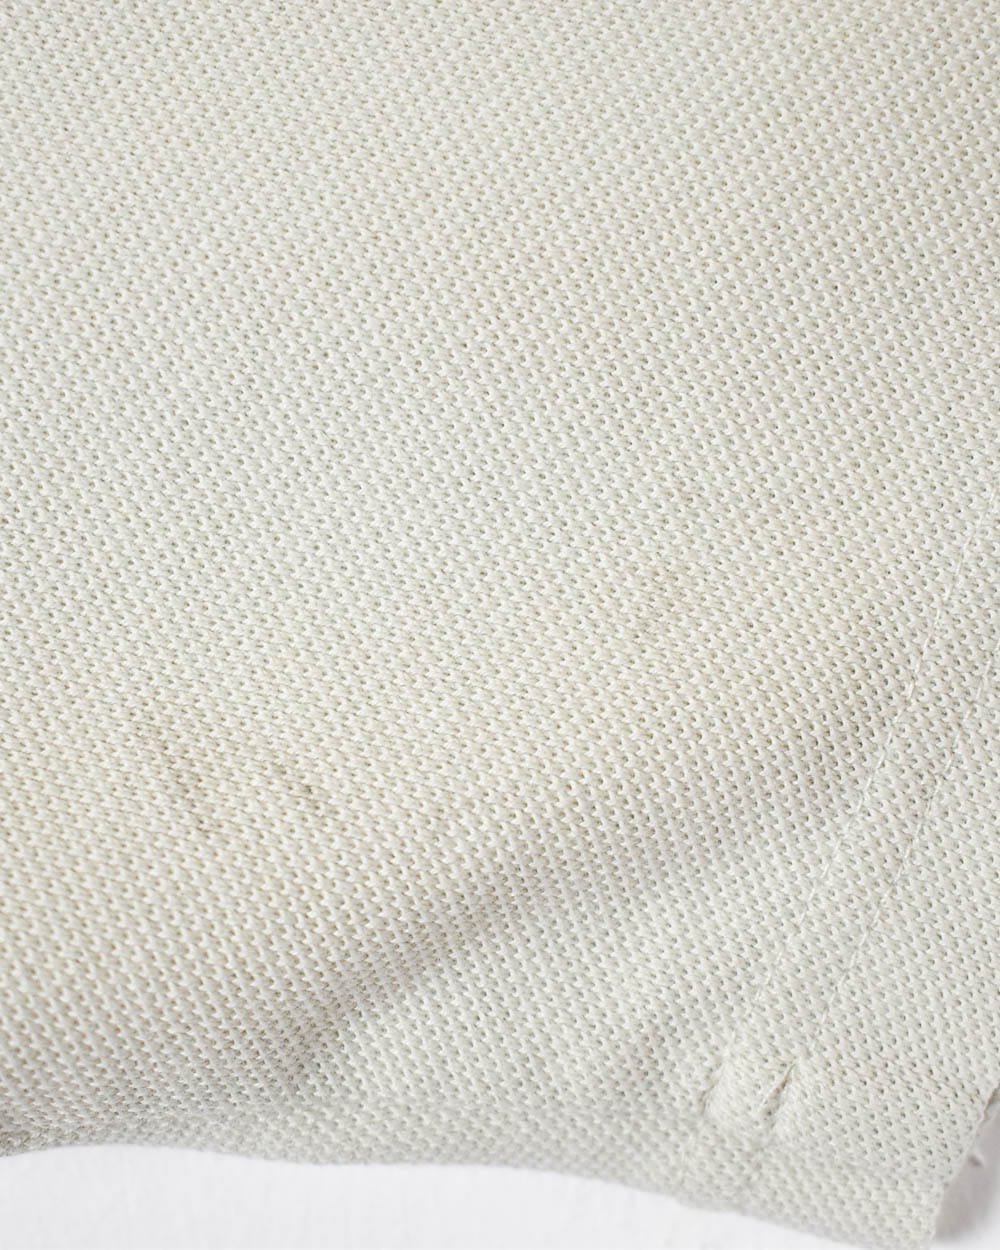 Neutral Adidas Polo Shirt - Medium